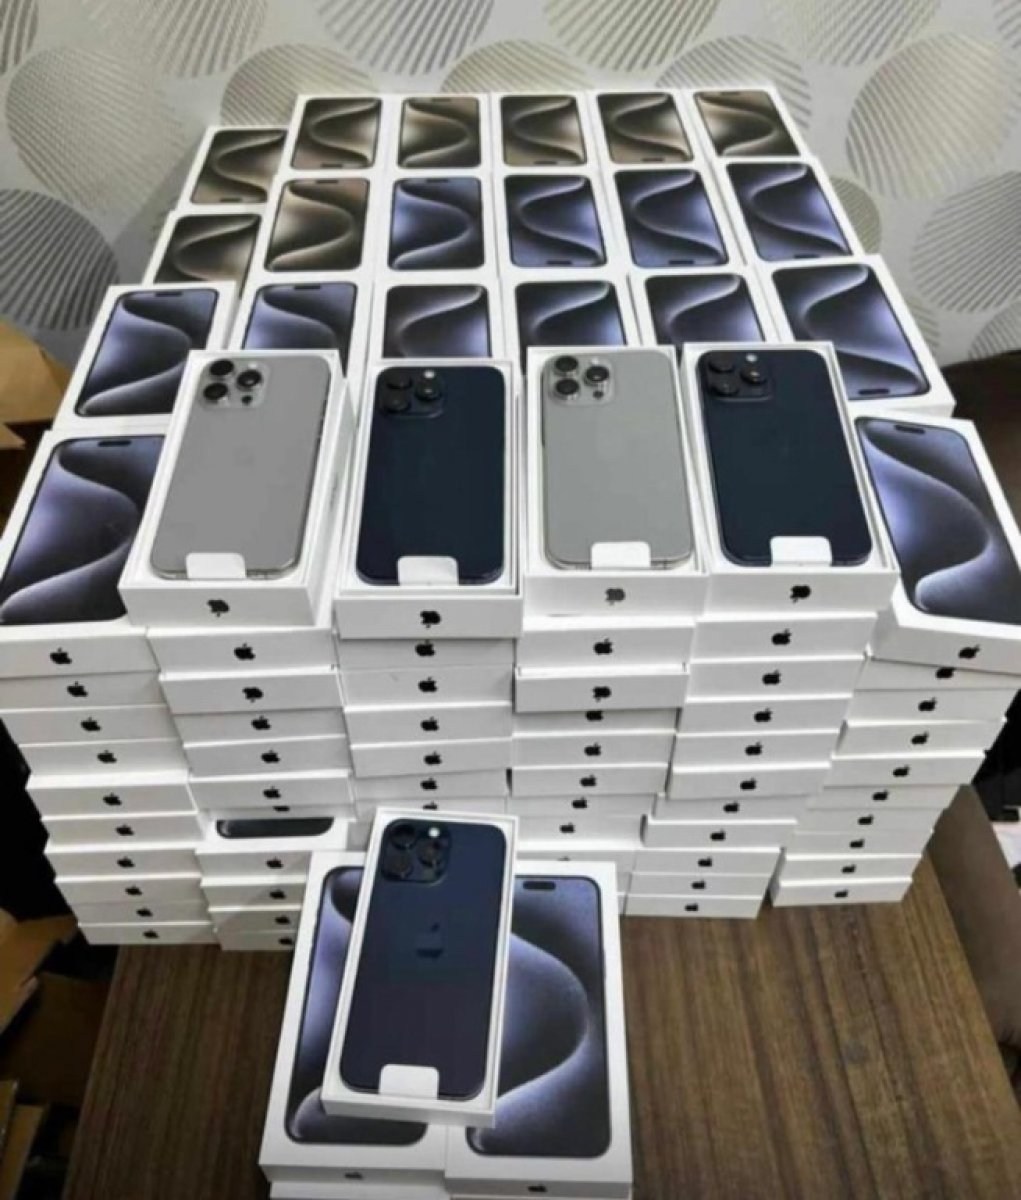 Apple iPhone 14 Pro Max, iPhone 14 Pro, iPhone 14, iPhone 14 Plus